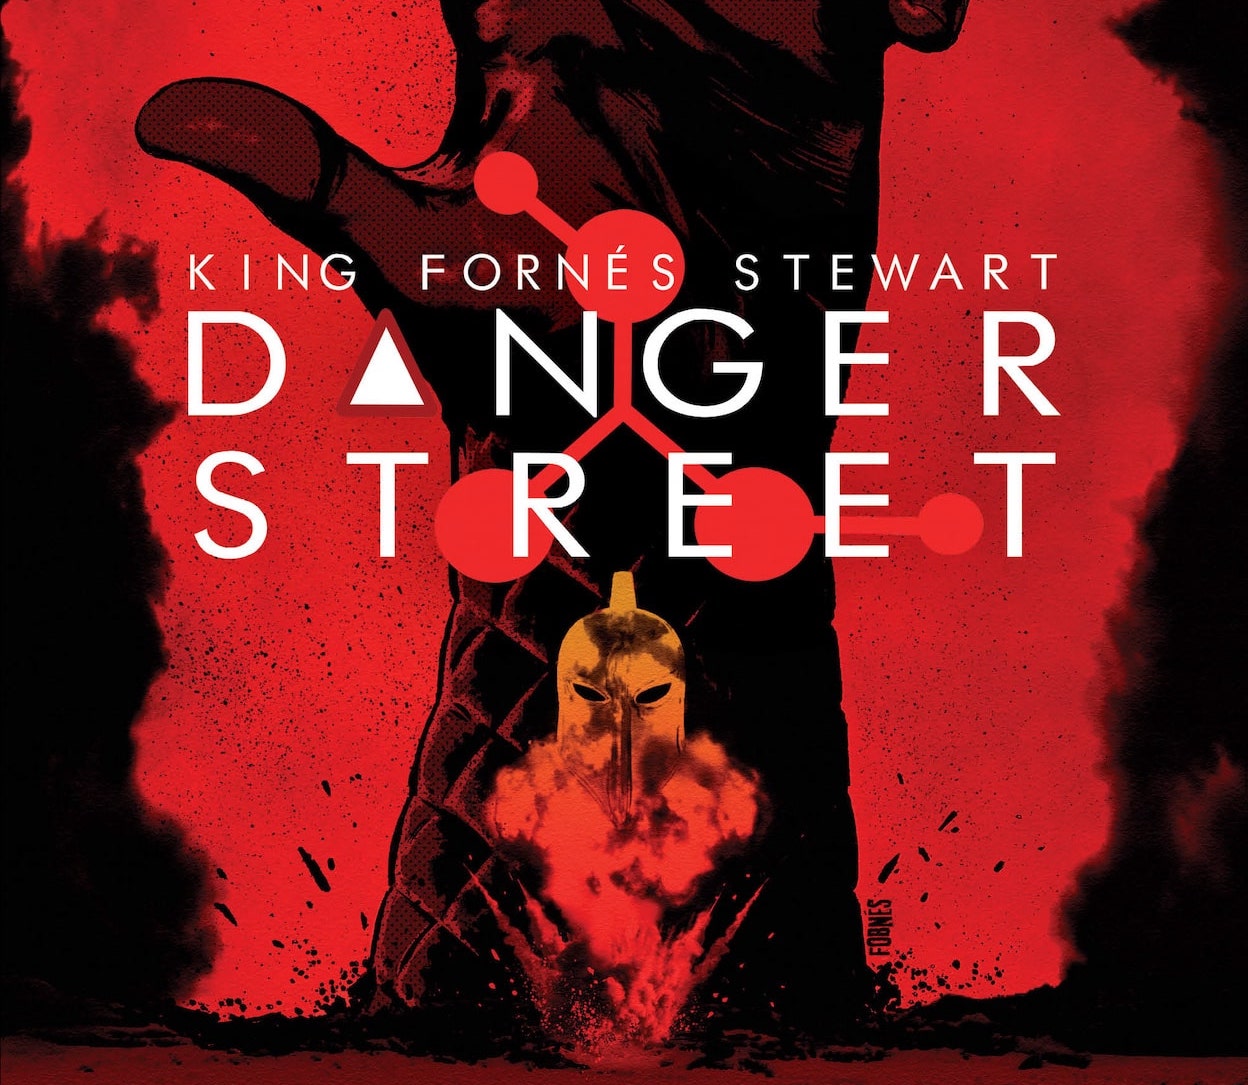 'Danger Street' #1 feels wholly original yet nostalgic too